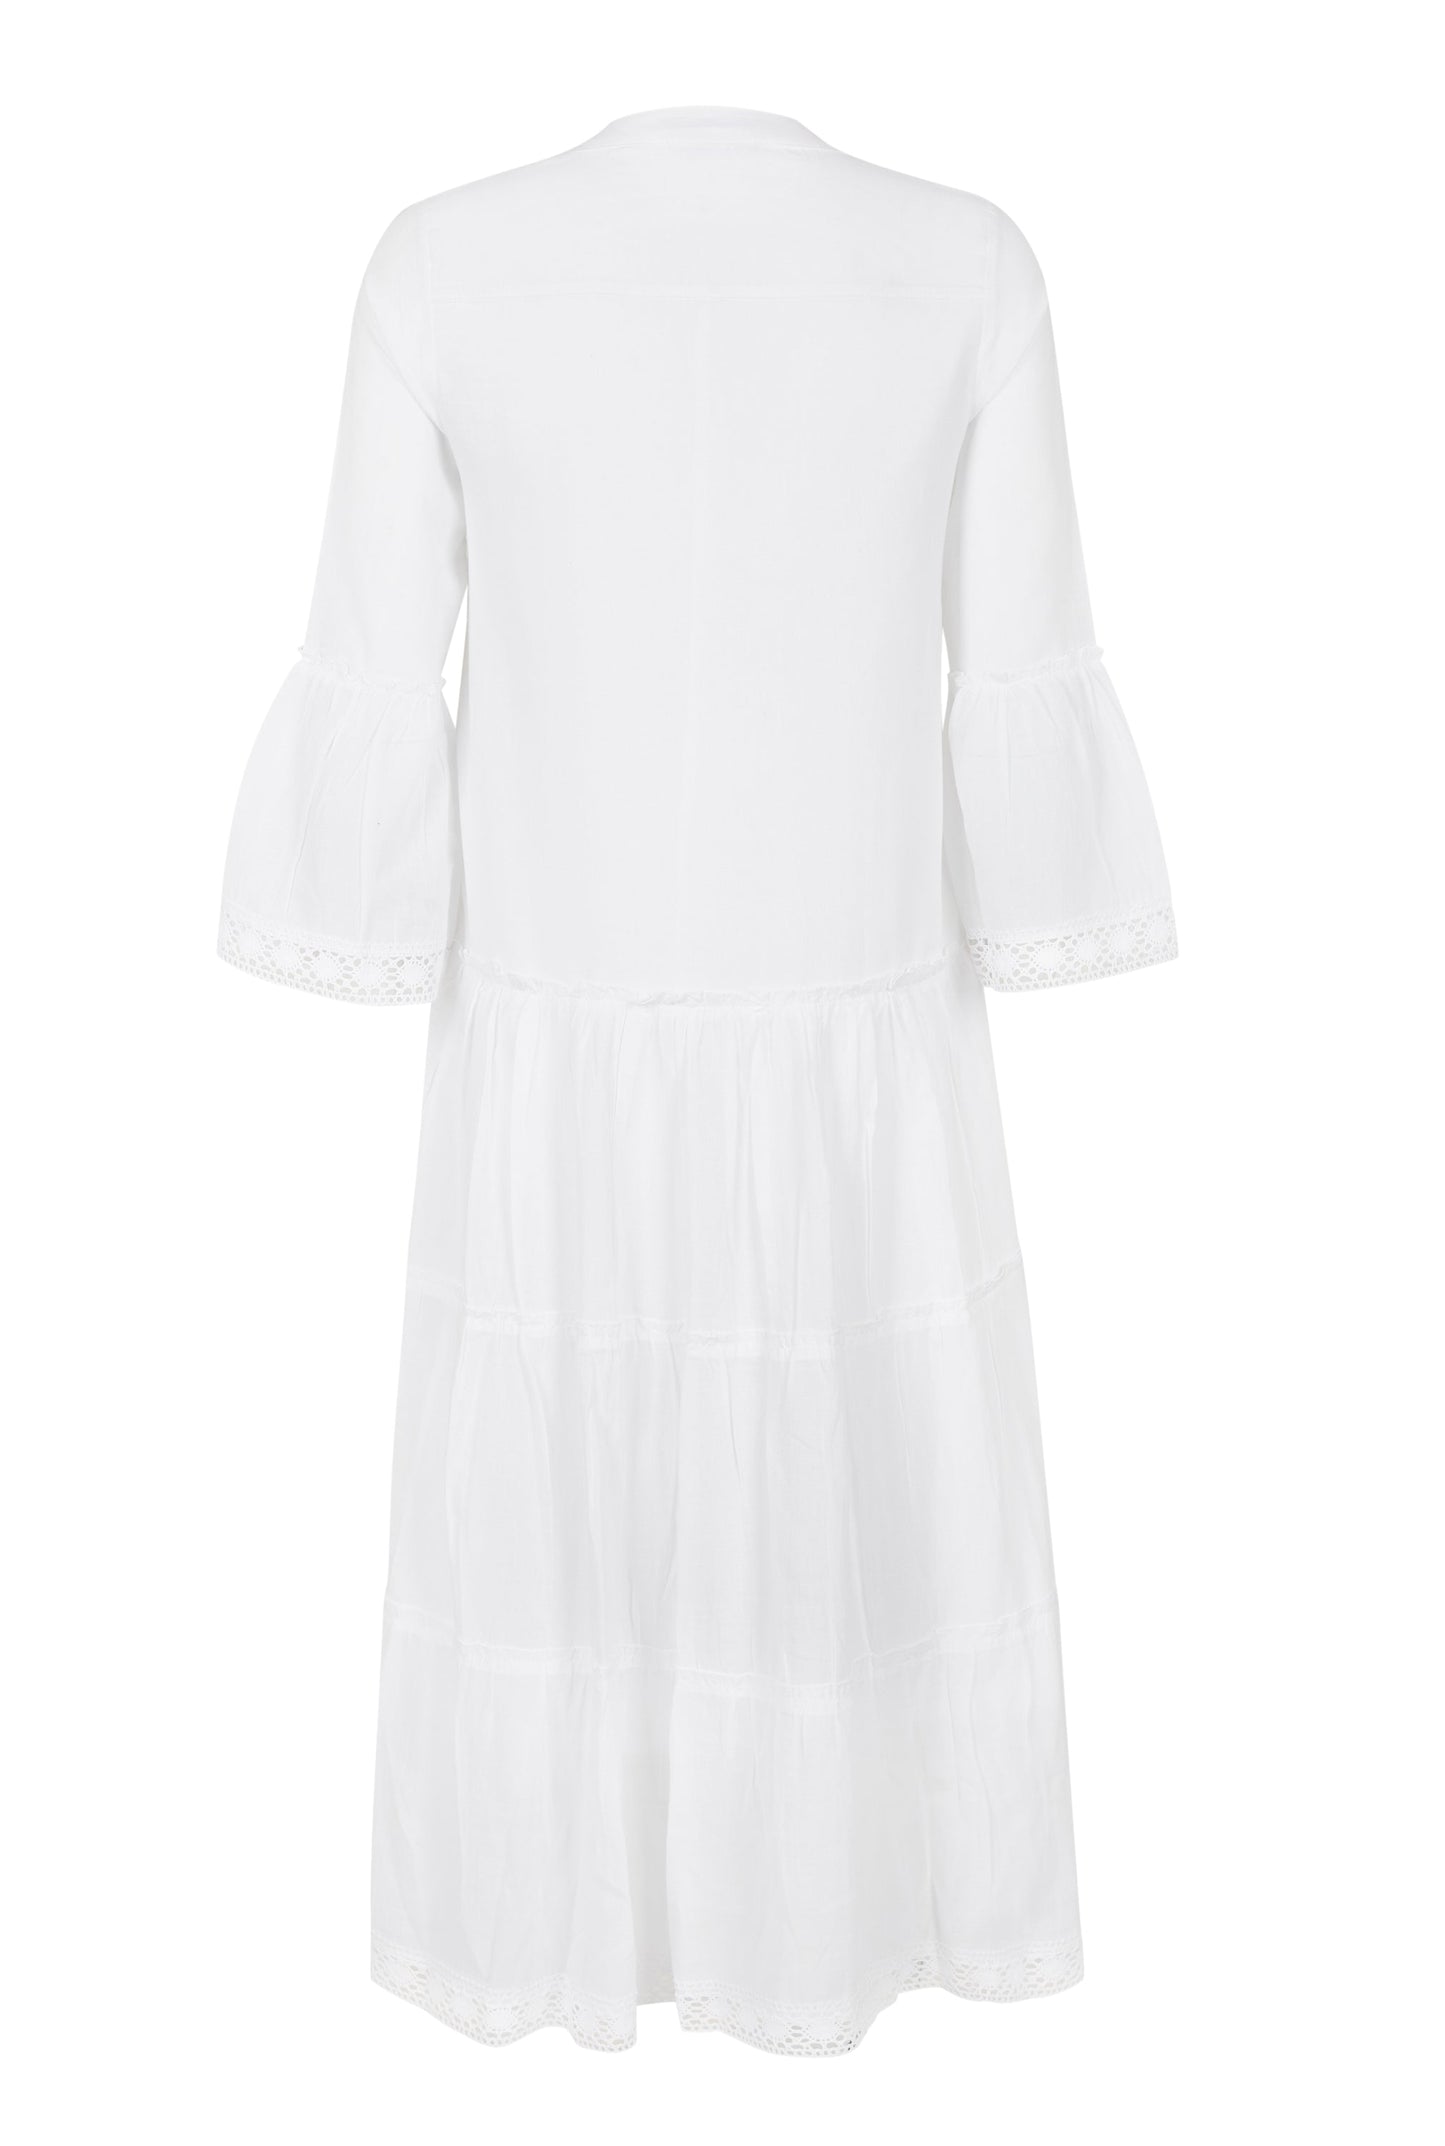 MIKA MAXI DRESS - WHITE